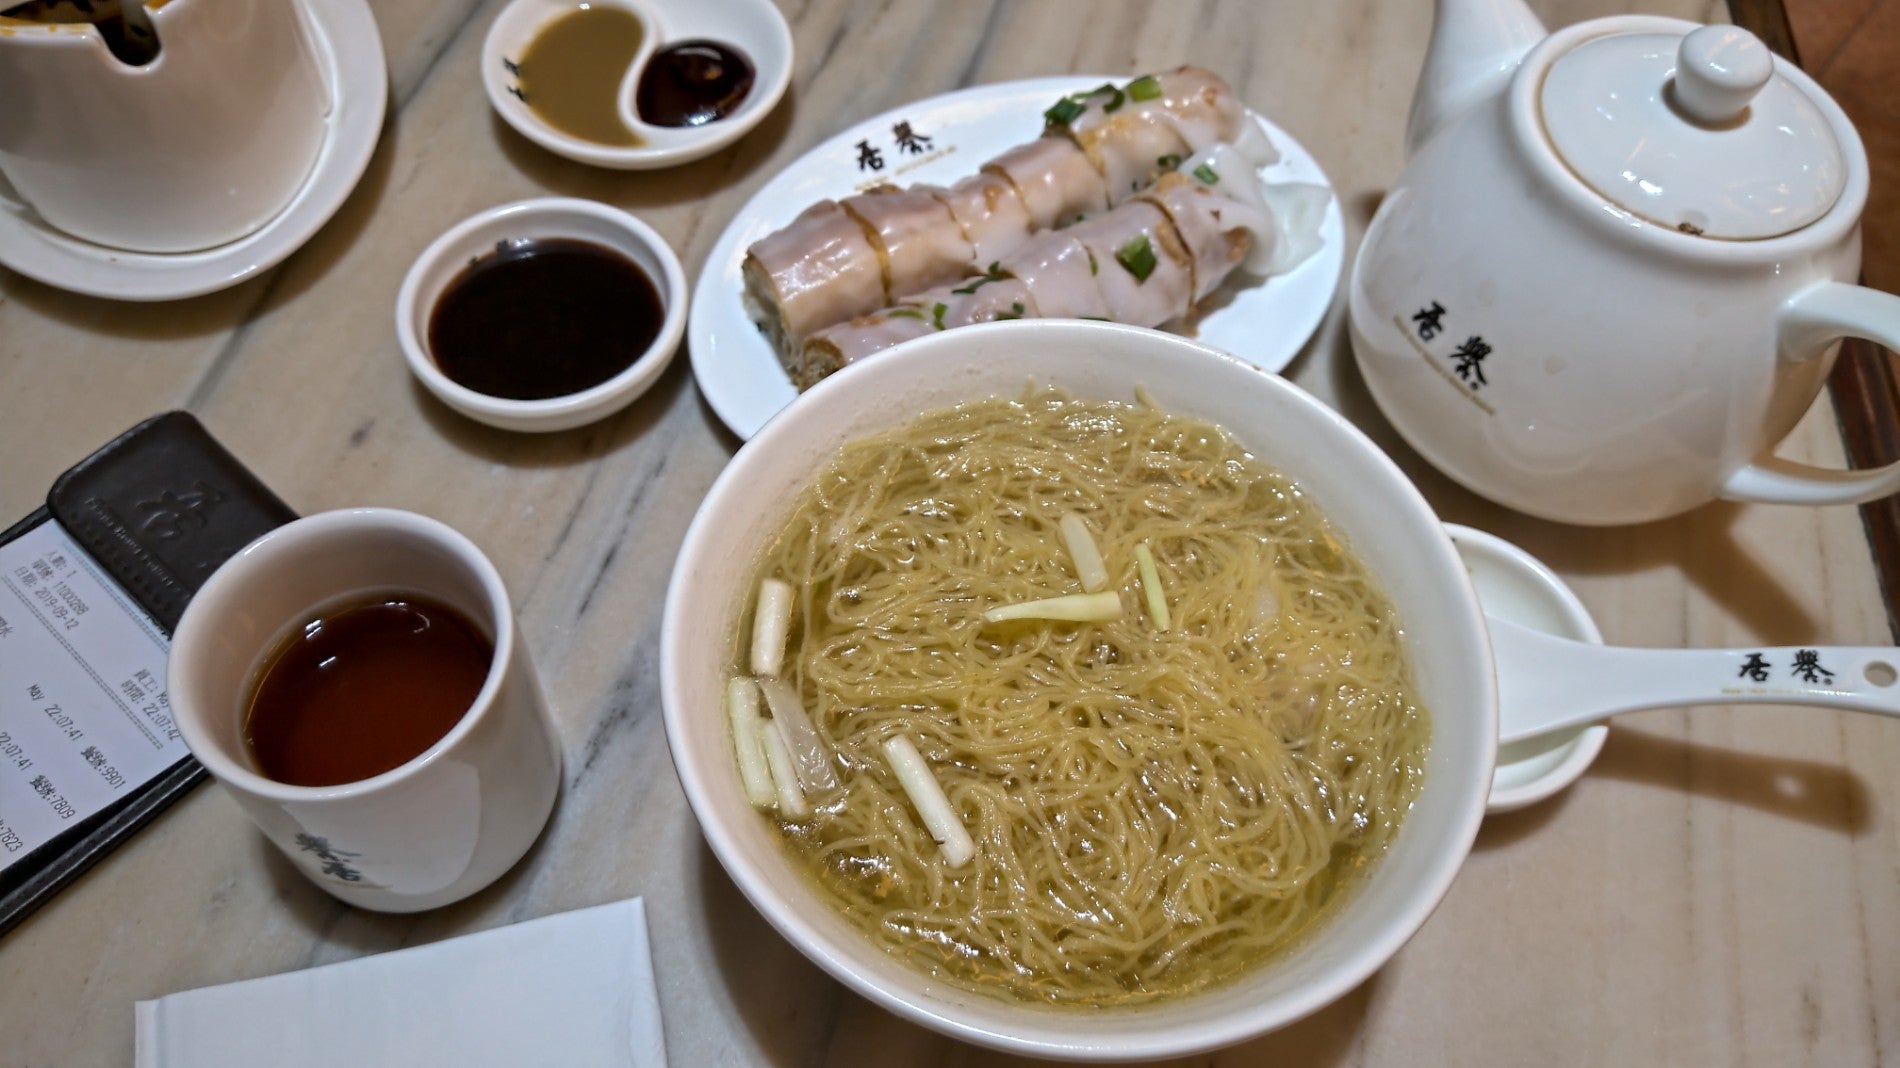 Praise House Congee & Noodle Cuisine 譽居 (譽居)